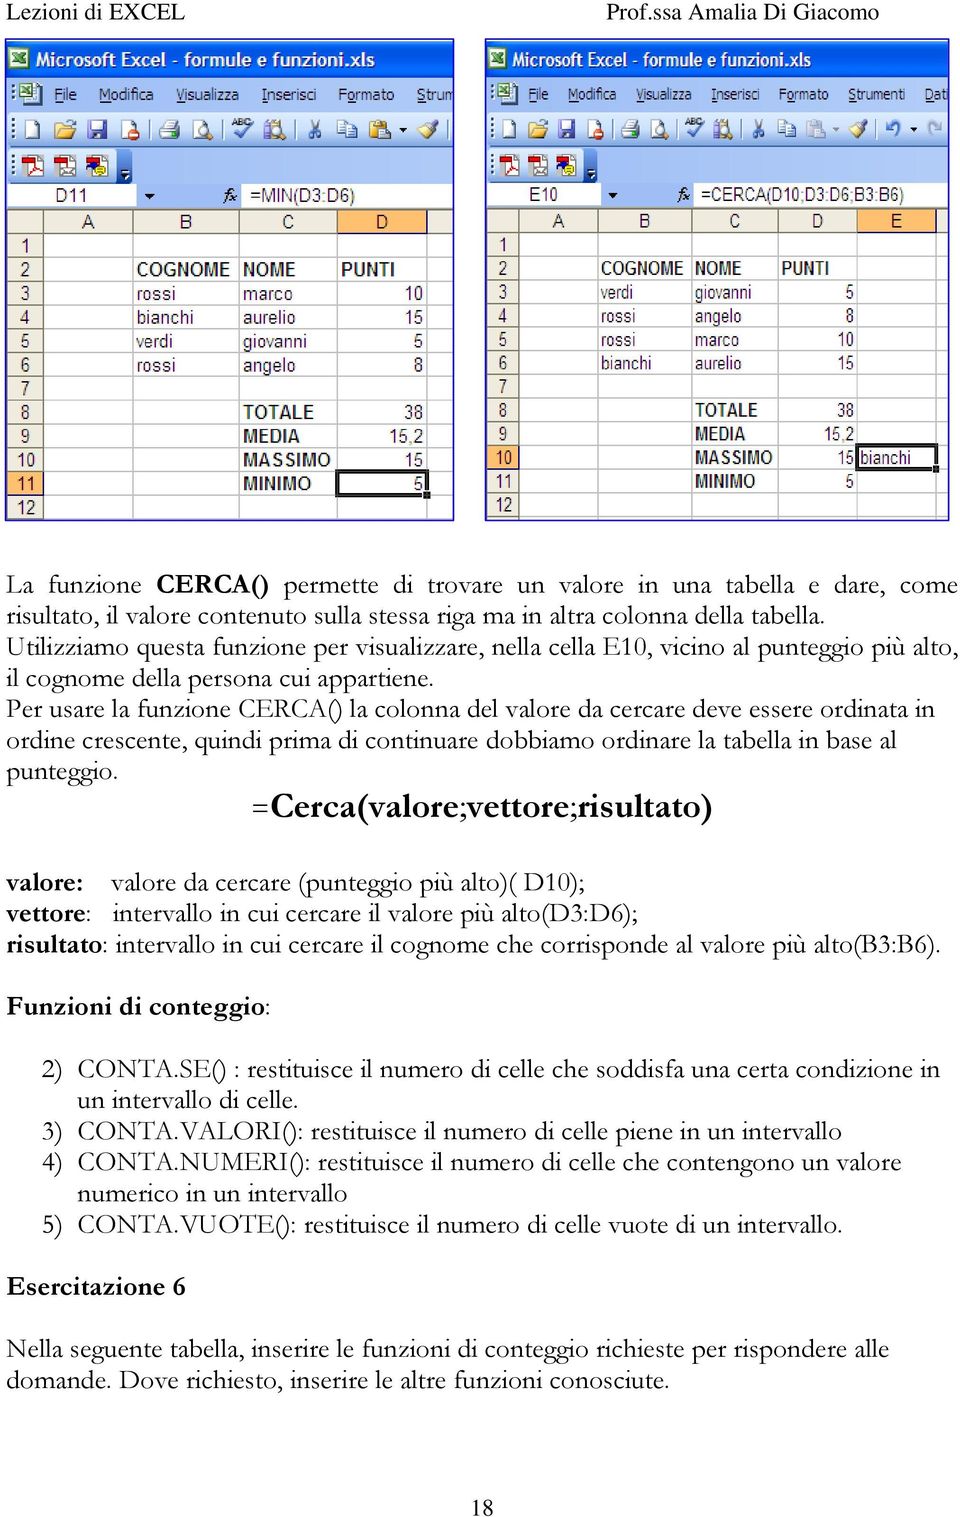 Per usare la funzione CERCA() la colonna del valore da cercare deve essere ordinata in ordine crescente, quindi prima di continuare dobbiamo ordinare la tabella in base al punteggio.